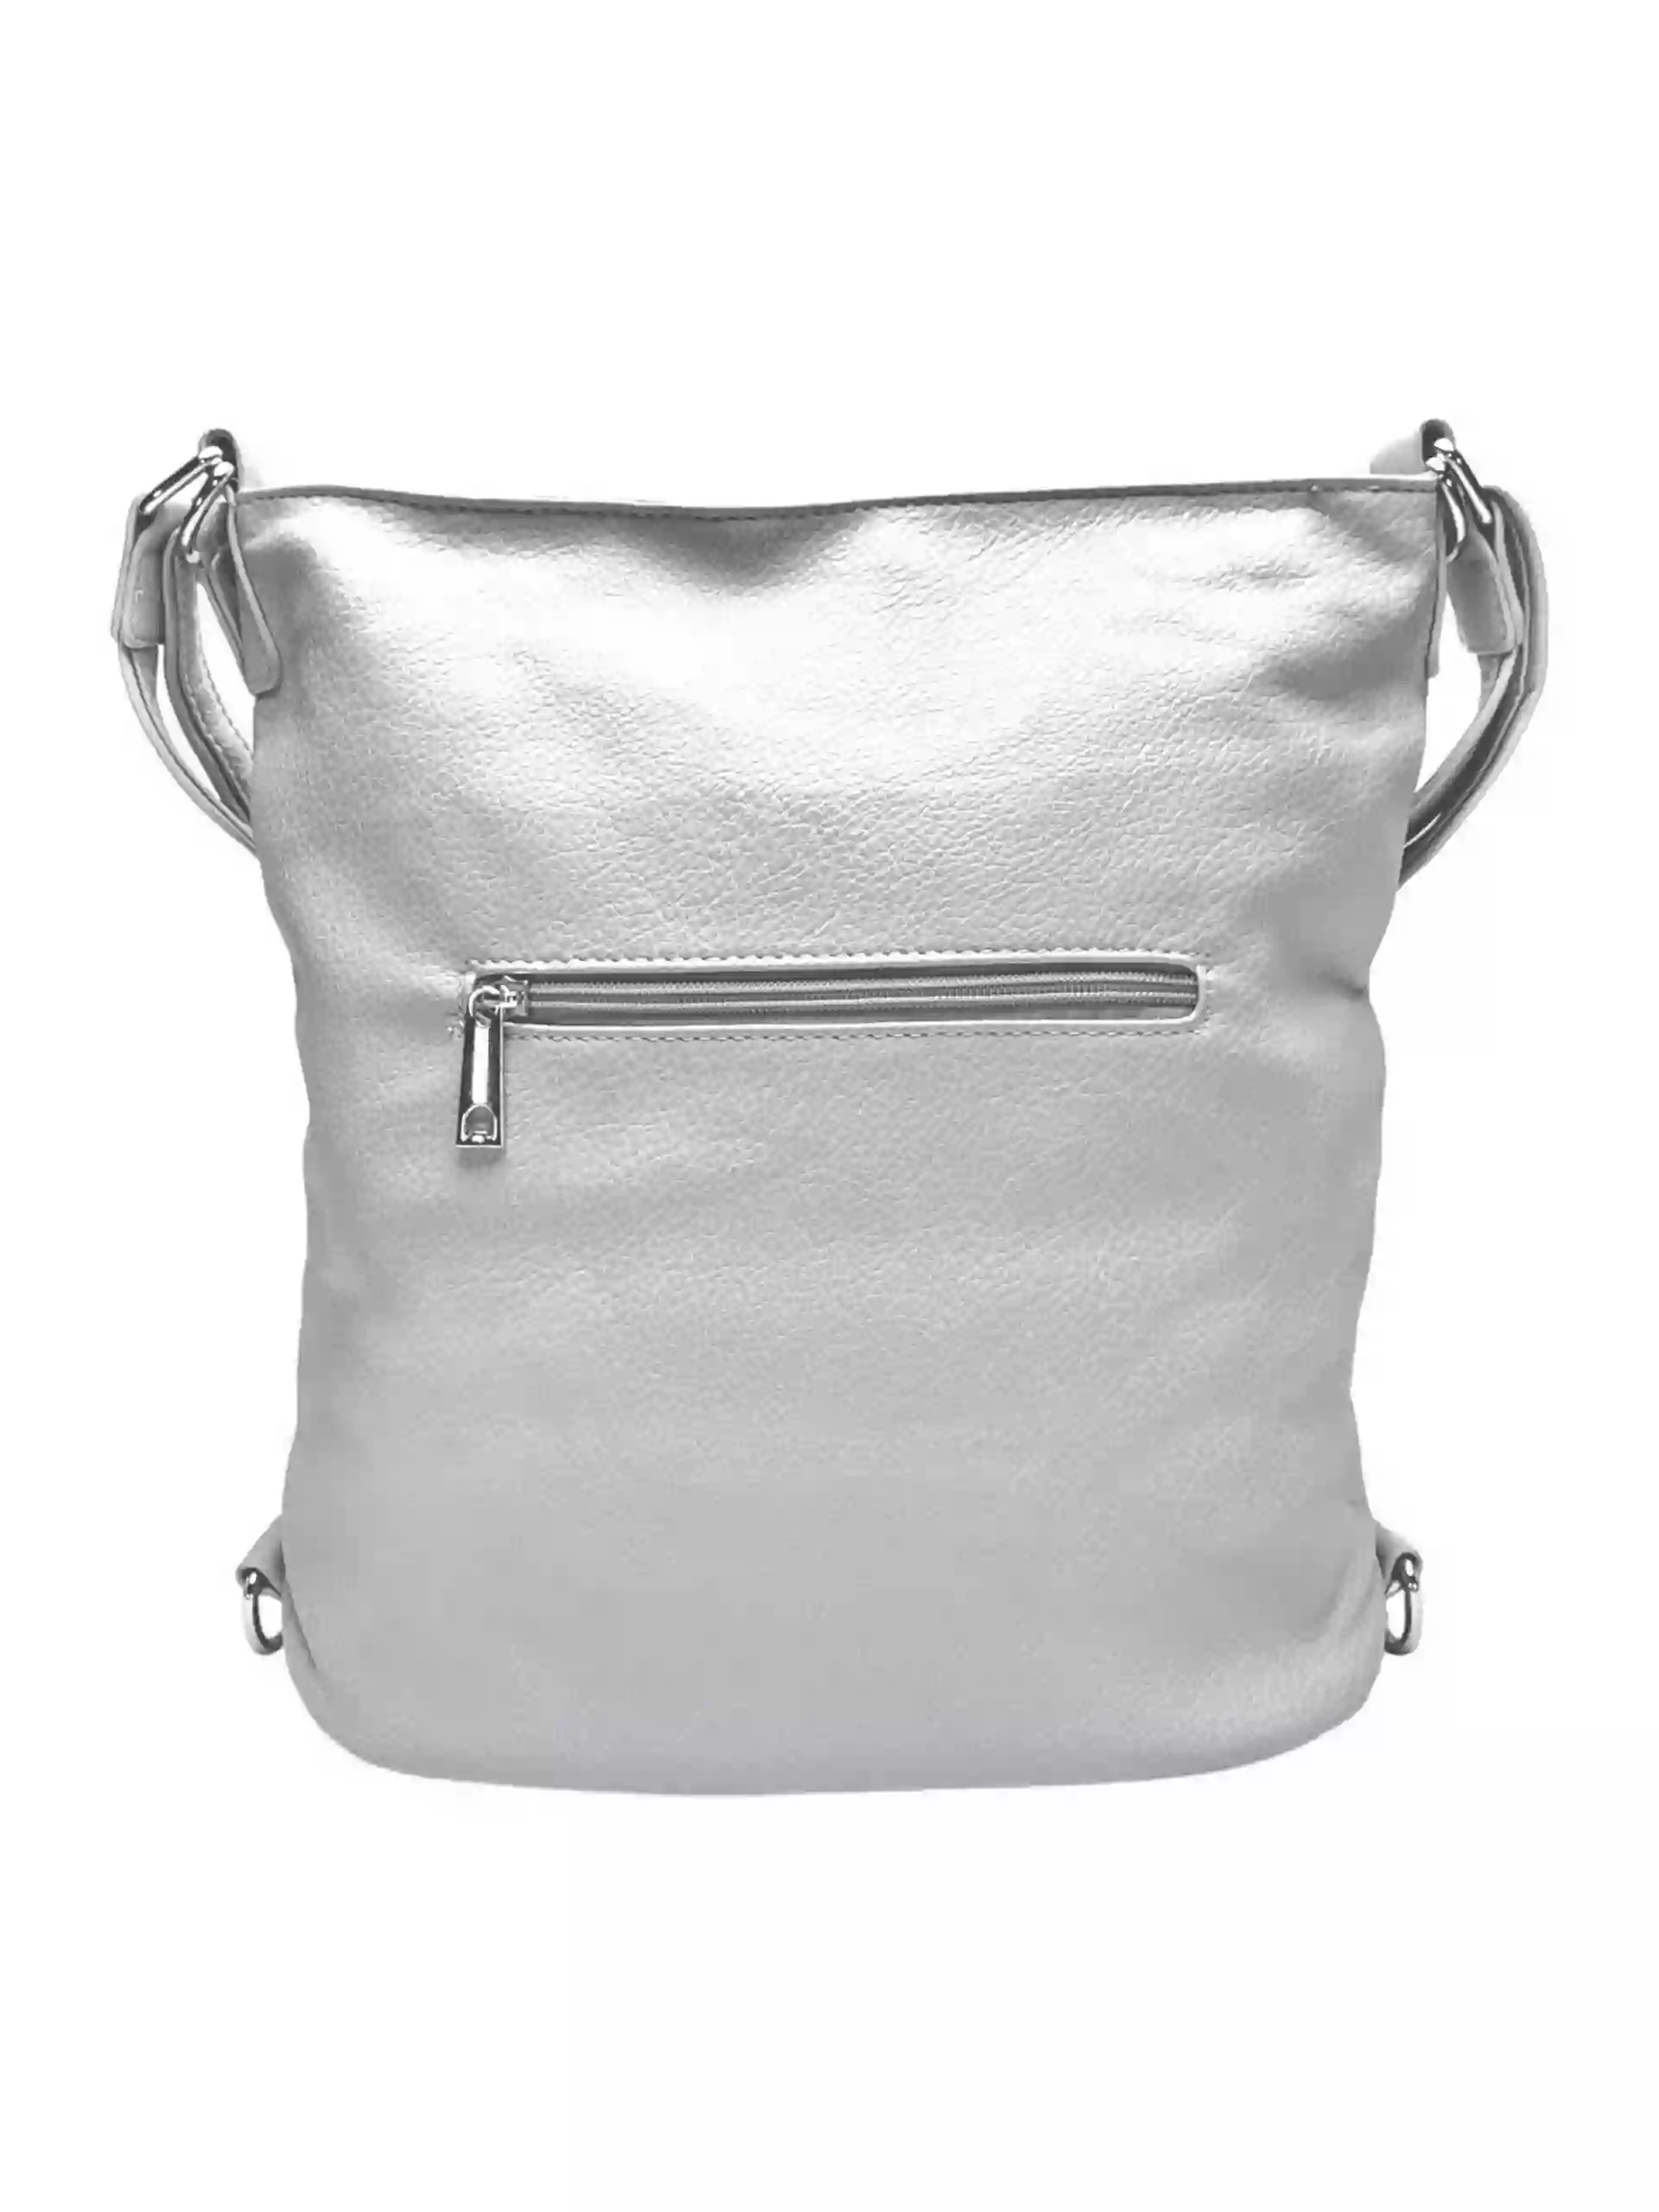 Střední světle šedý kabelko-batoh 2v1 s třásněmi, Bella Belly, 5394, zadní strana kabelko-batohu 2v1